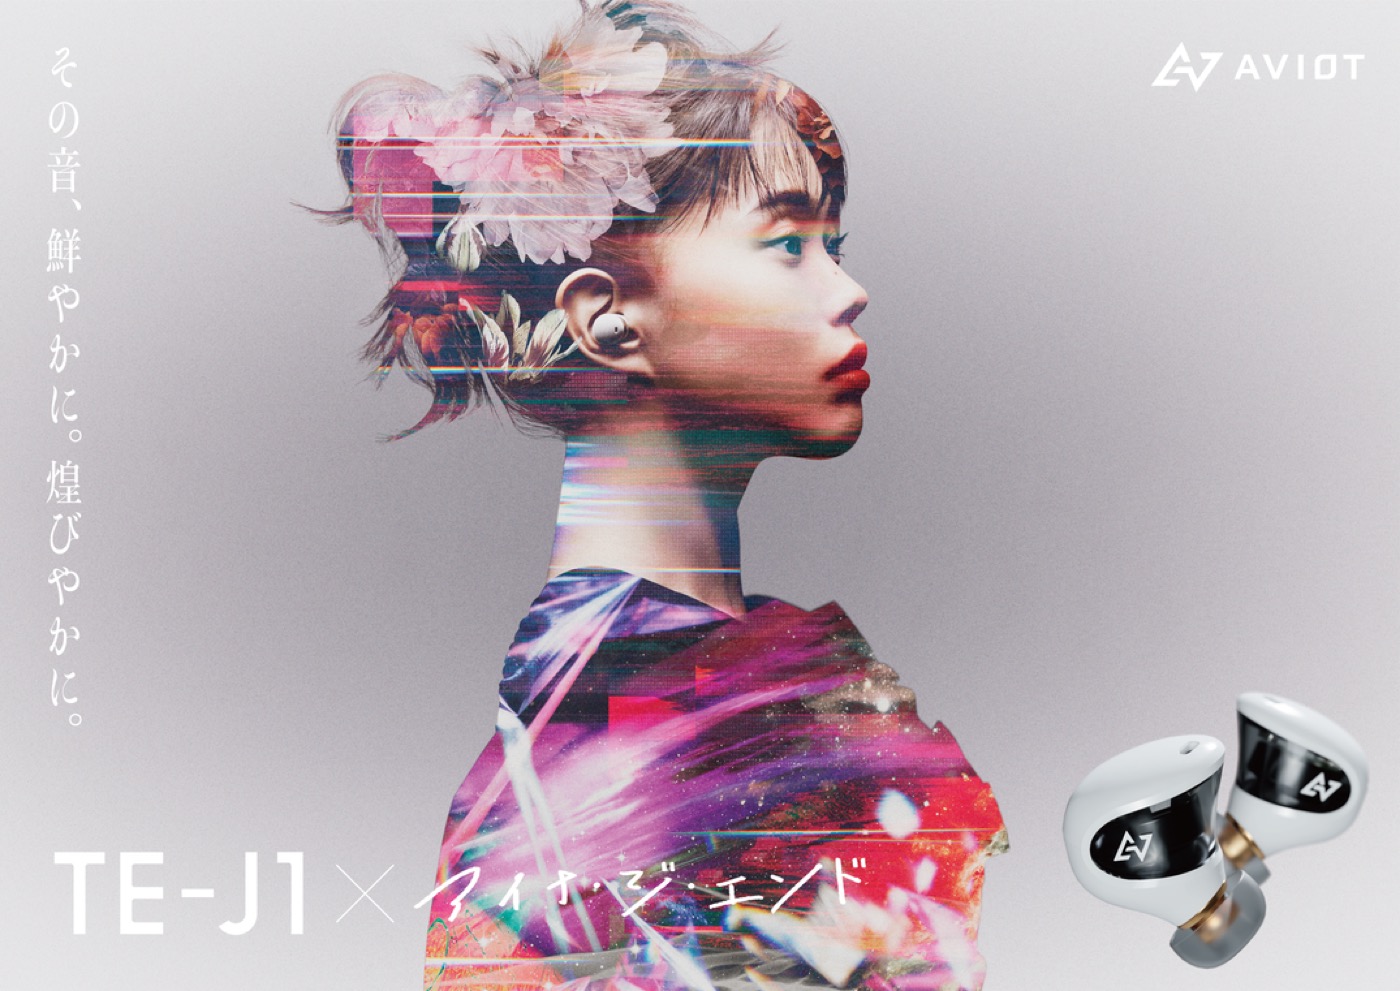 アイナ・ジ・エンド、AVIOTの完全ワイヤレスイヤホン新モデルのタイアップアーティストに決定！ ムービーも公開